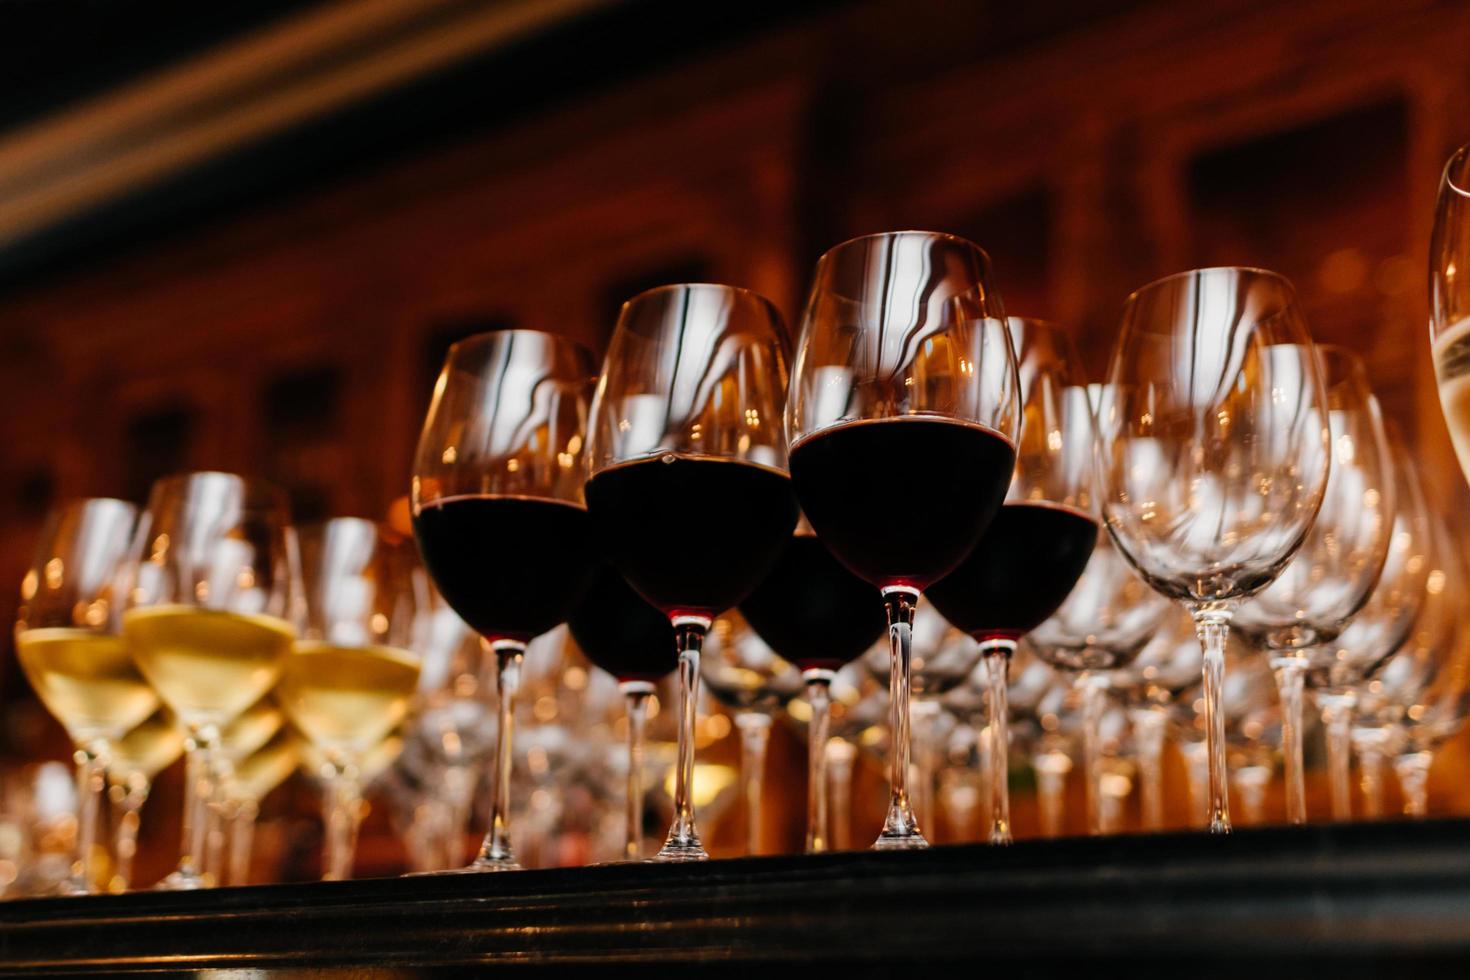 veel glazen gevuld met witte en rode wijn op tafel. donkere kleuren. wijn collectie. horizontaal schot. drank in wijnglazen foto